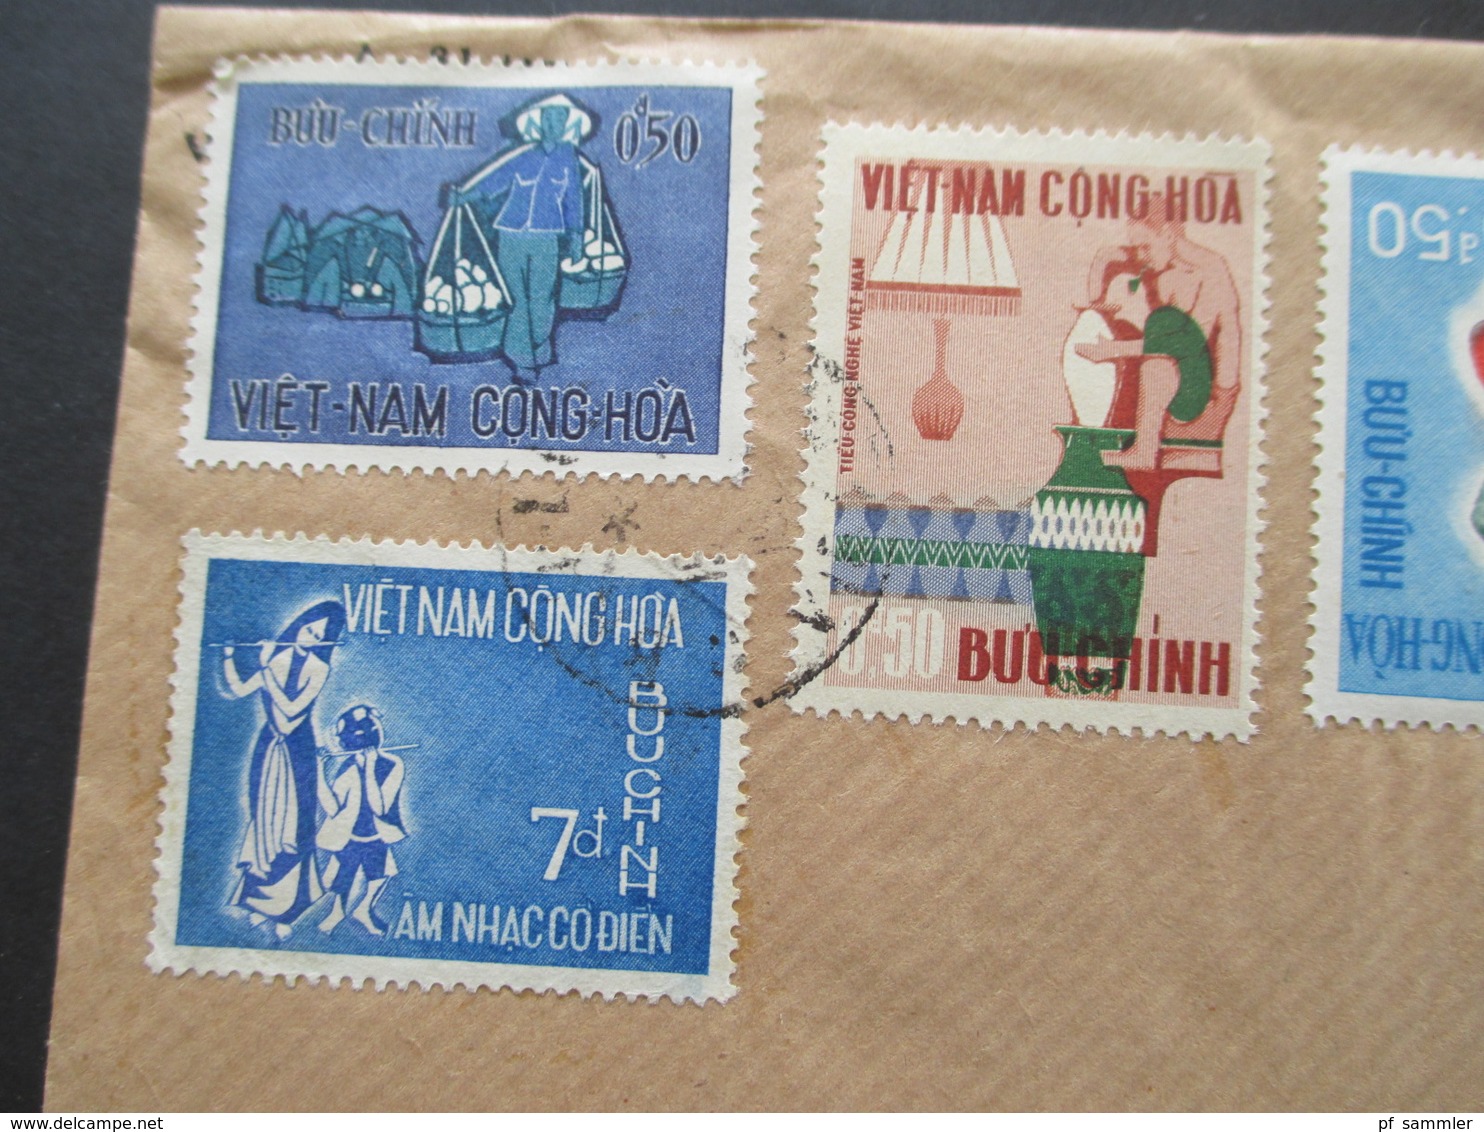 Vietnam / Süd Vietnam 1968 Auslandsbrief Nach Finnland! 5 Marken Und Mit Inhalt!! Saigon - Vietnam